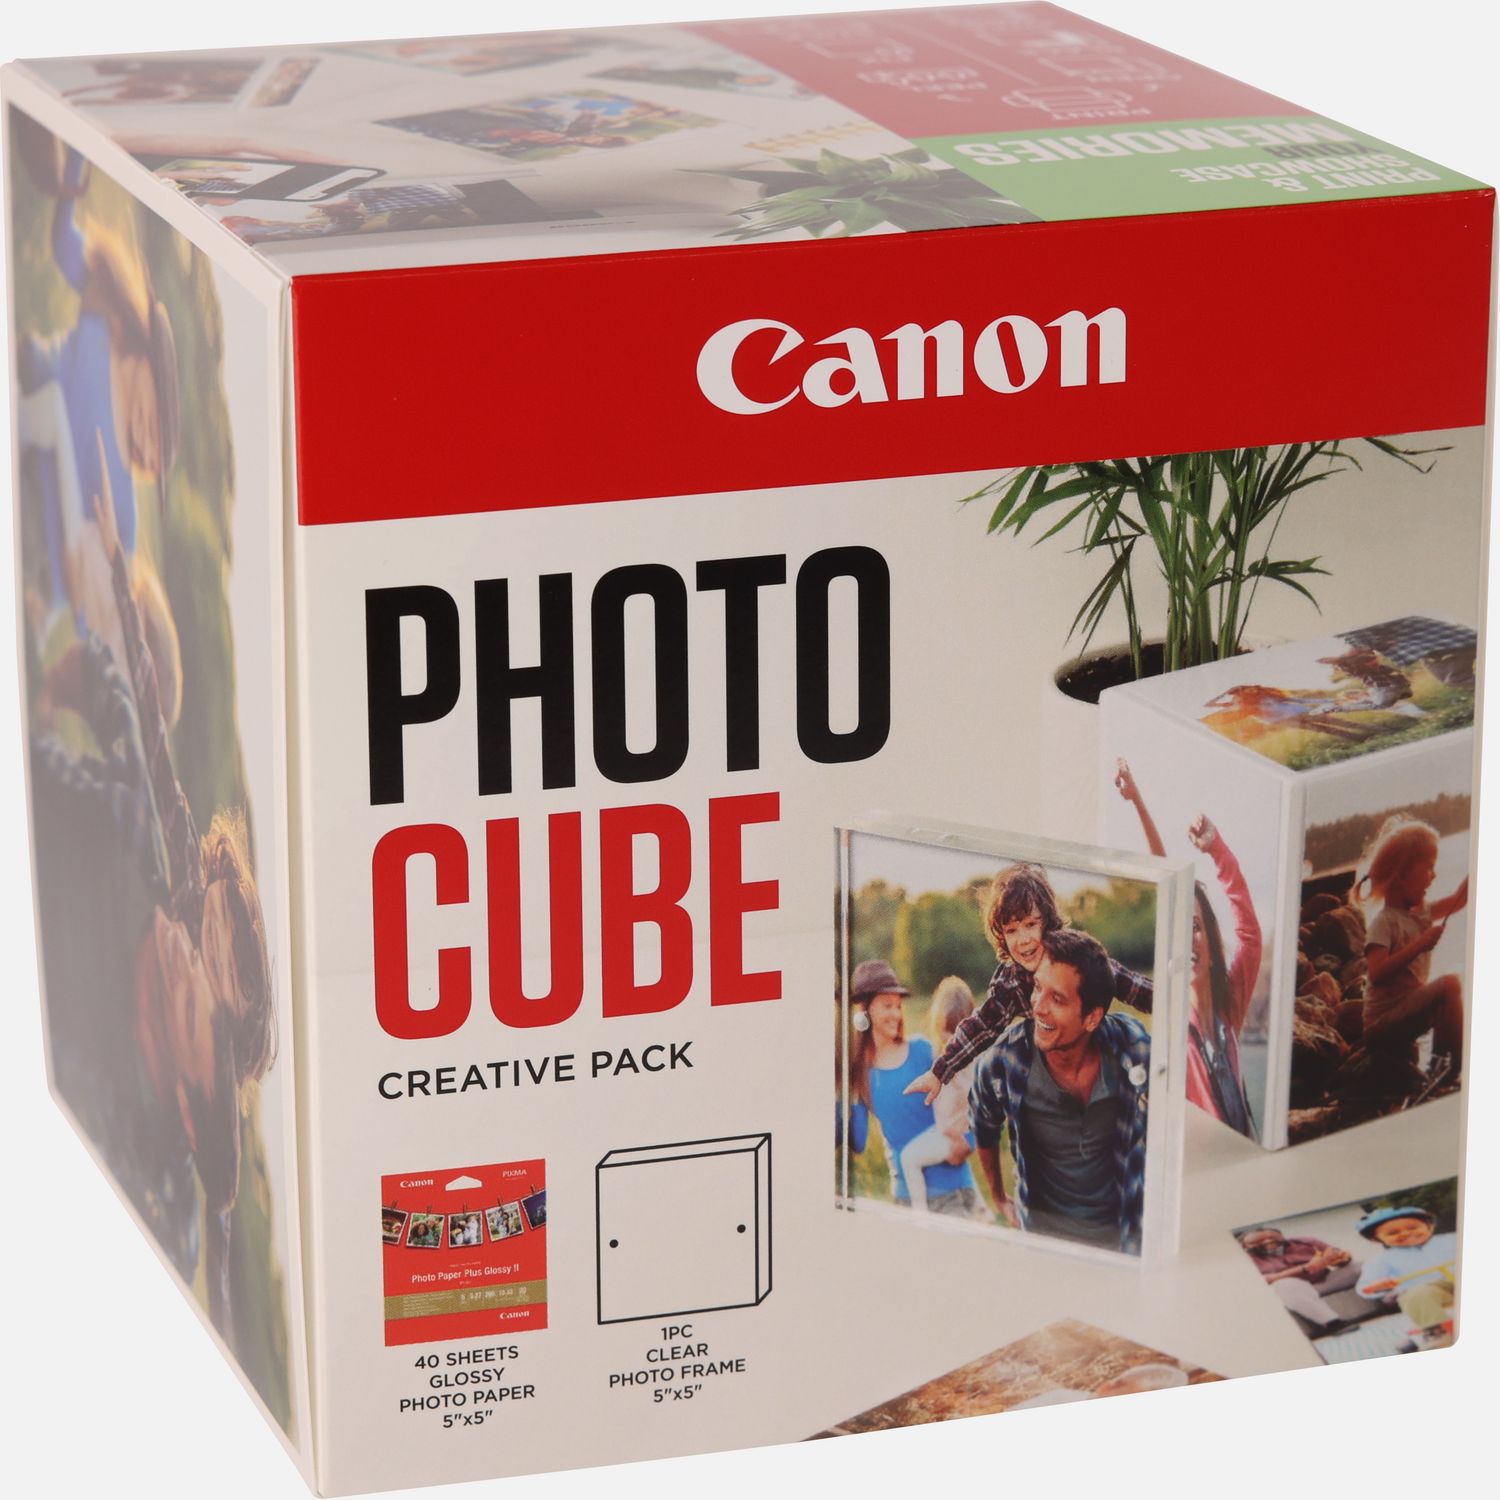 Image of Canon Photo Cube e cornice + carta fotografica lucida Plus Glossy II PP-201 da 5"x5" (40 fogli) - Pacchetto creativo, verde